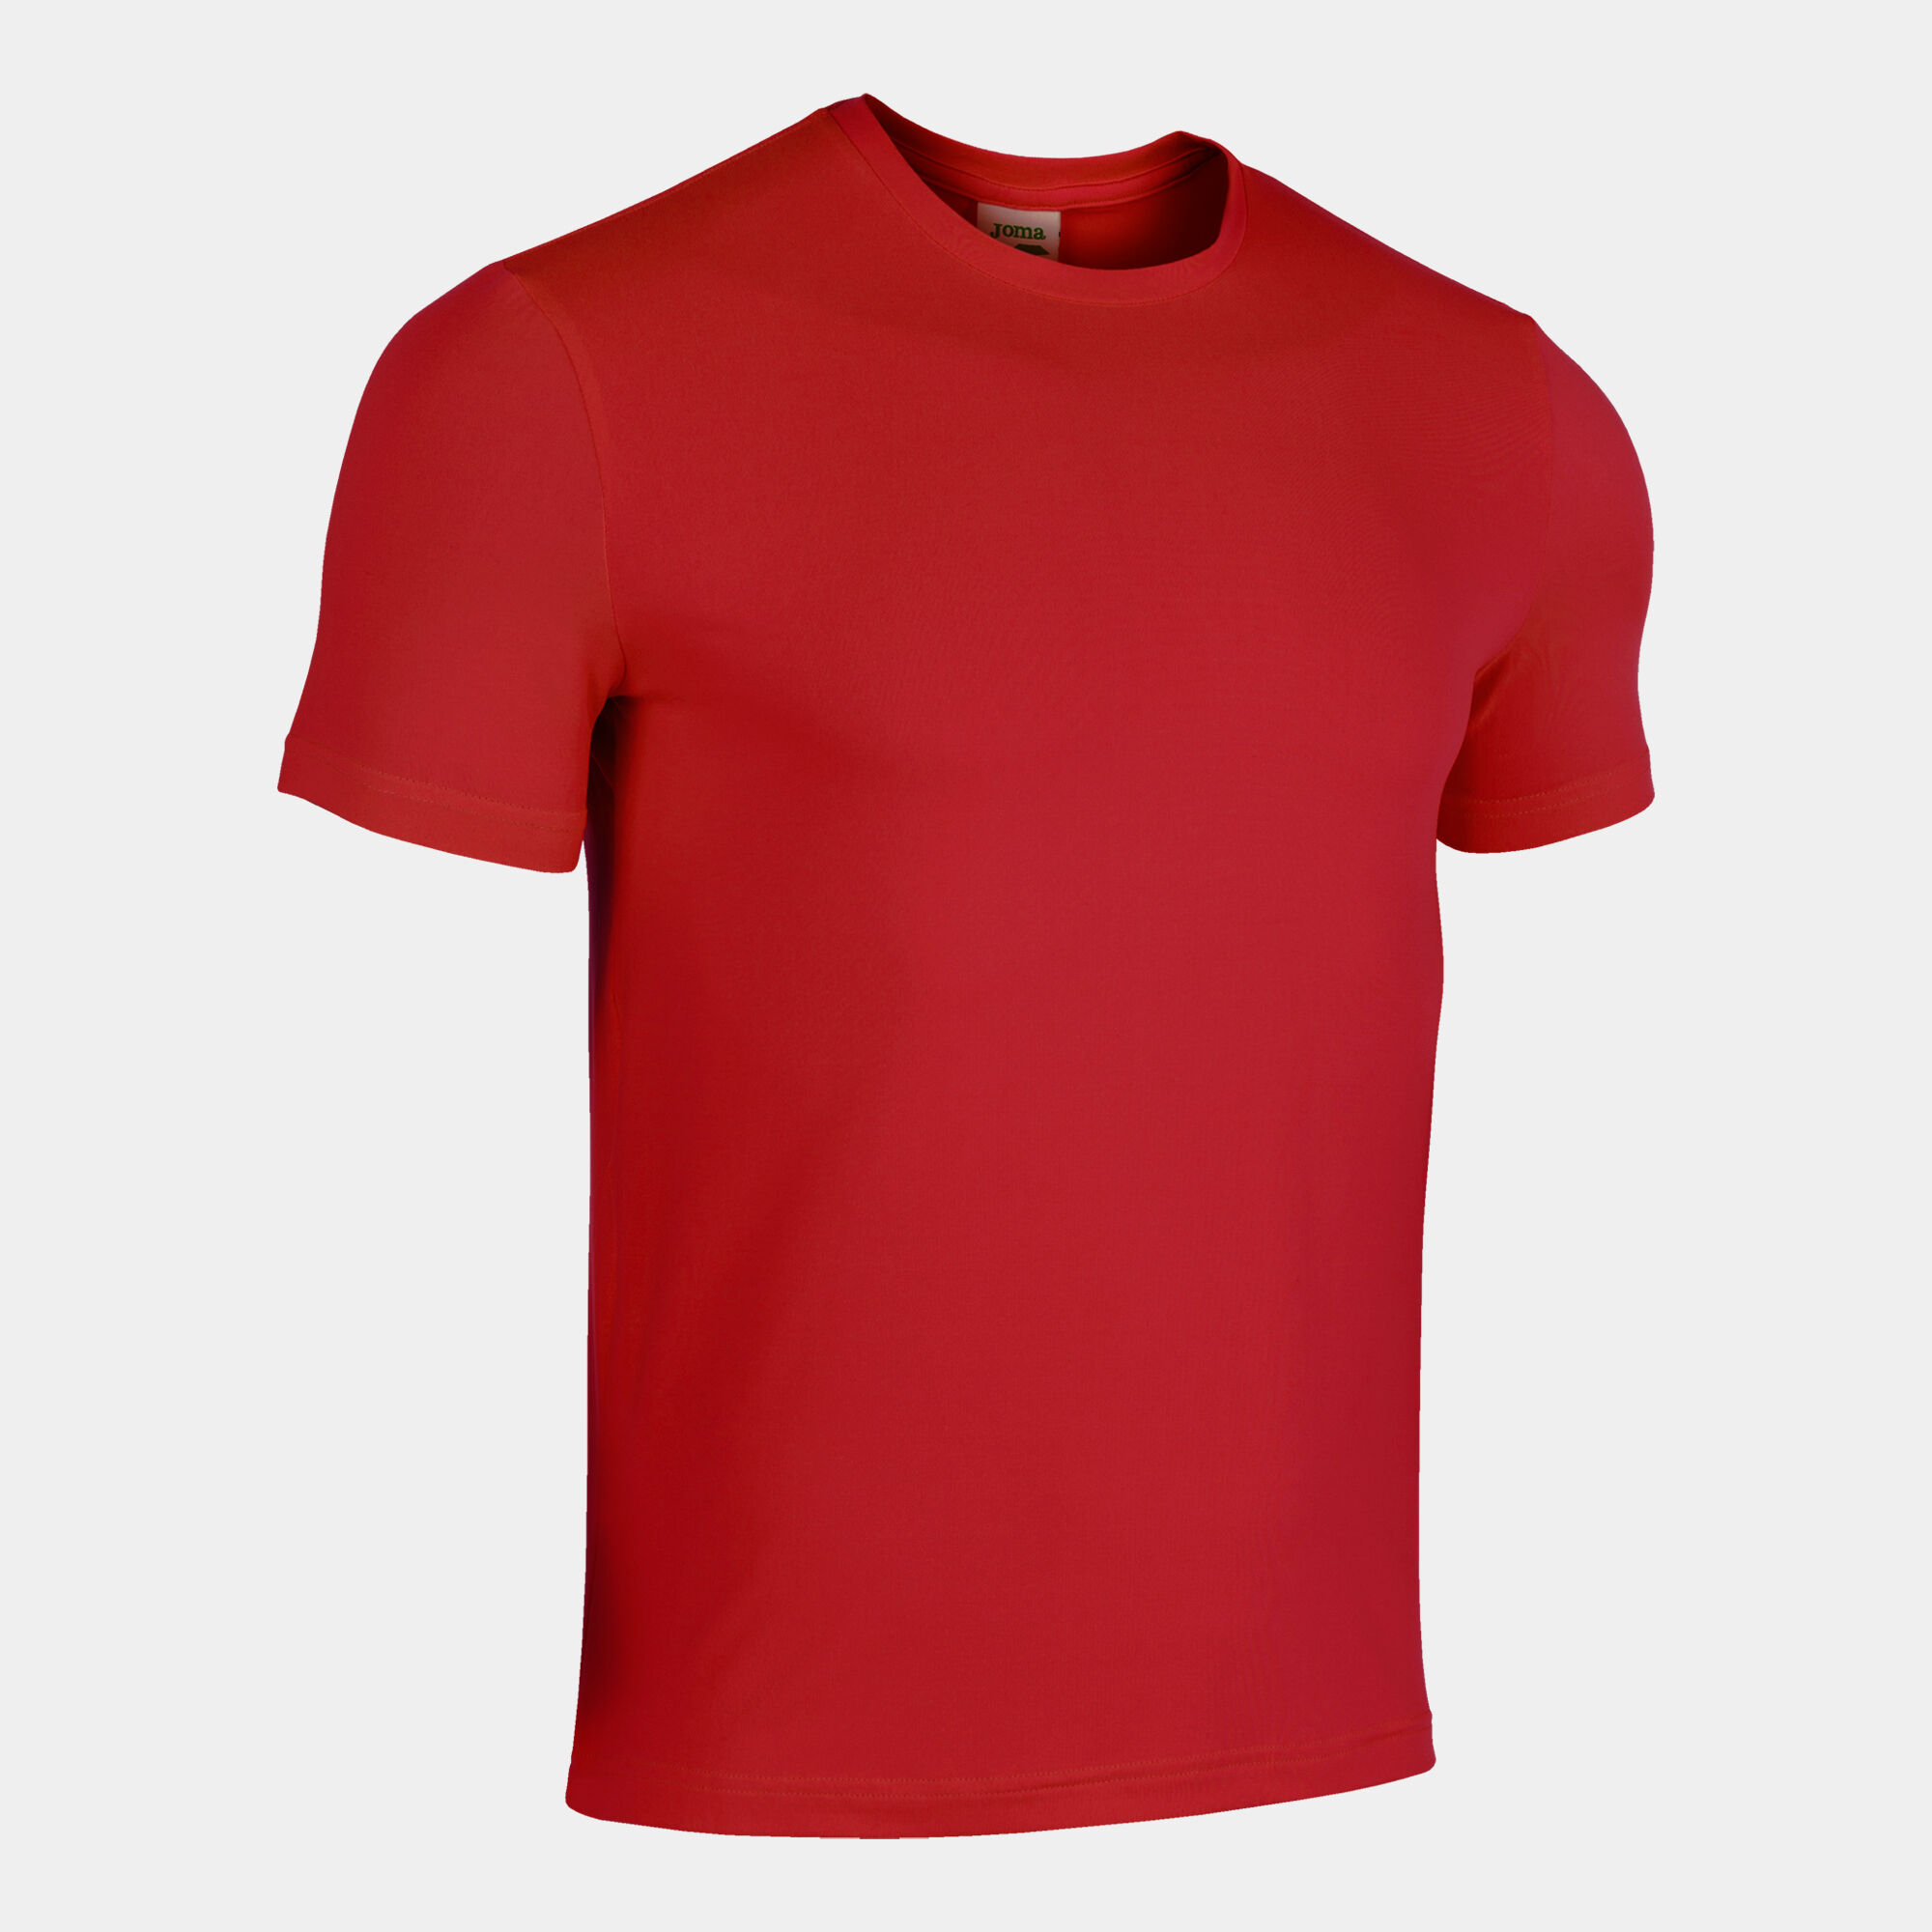 Camiseta manga corta hombre Sydney rojo